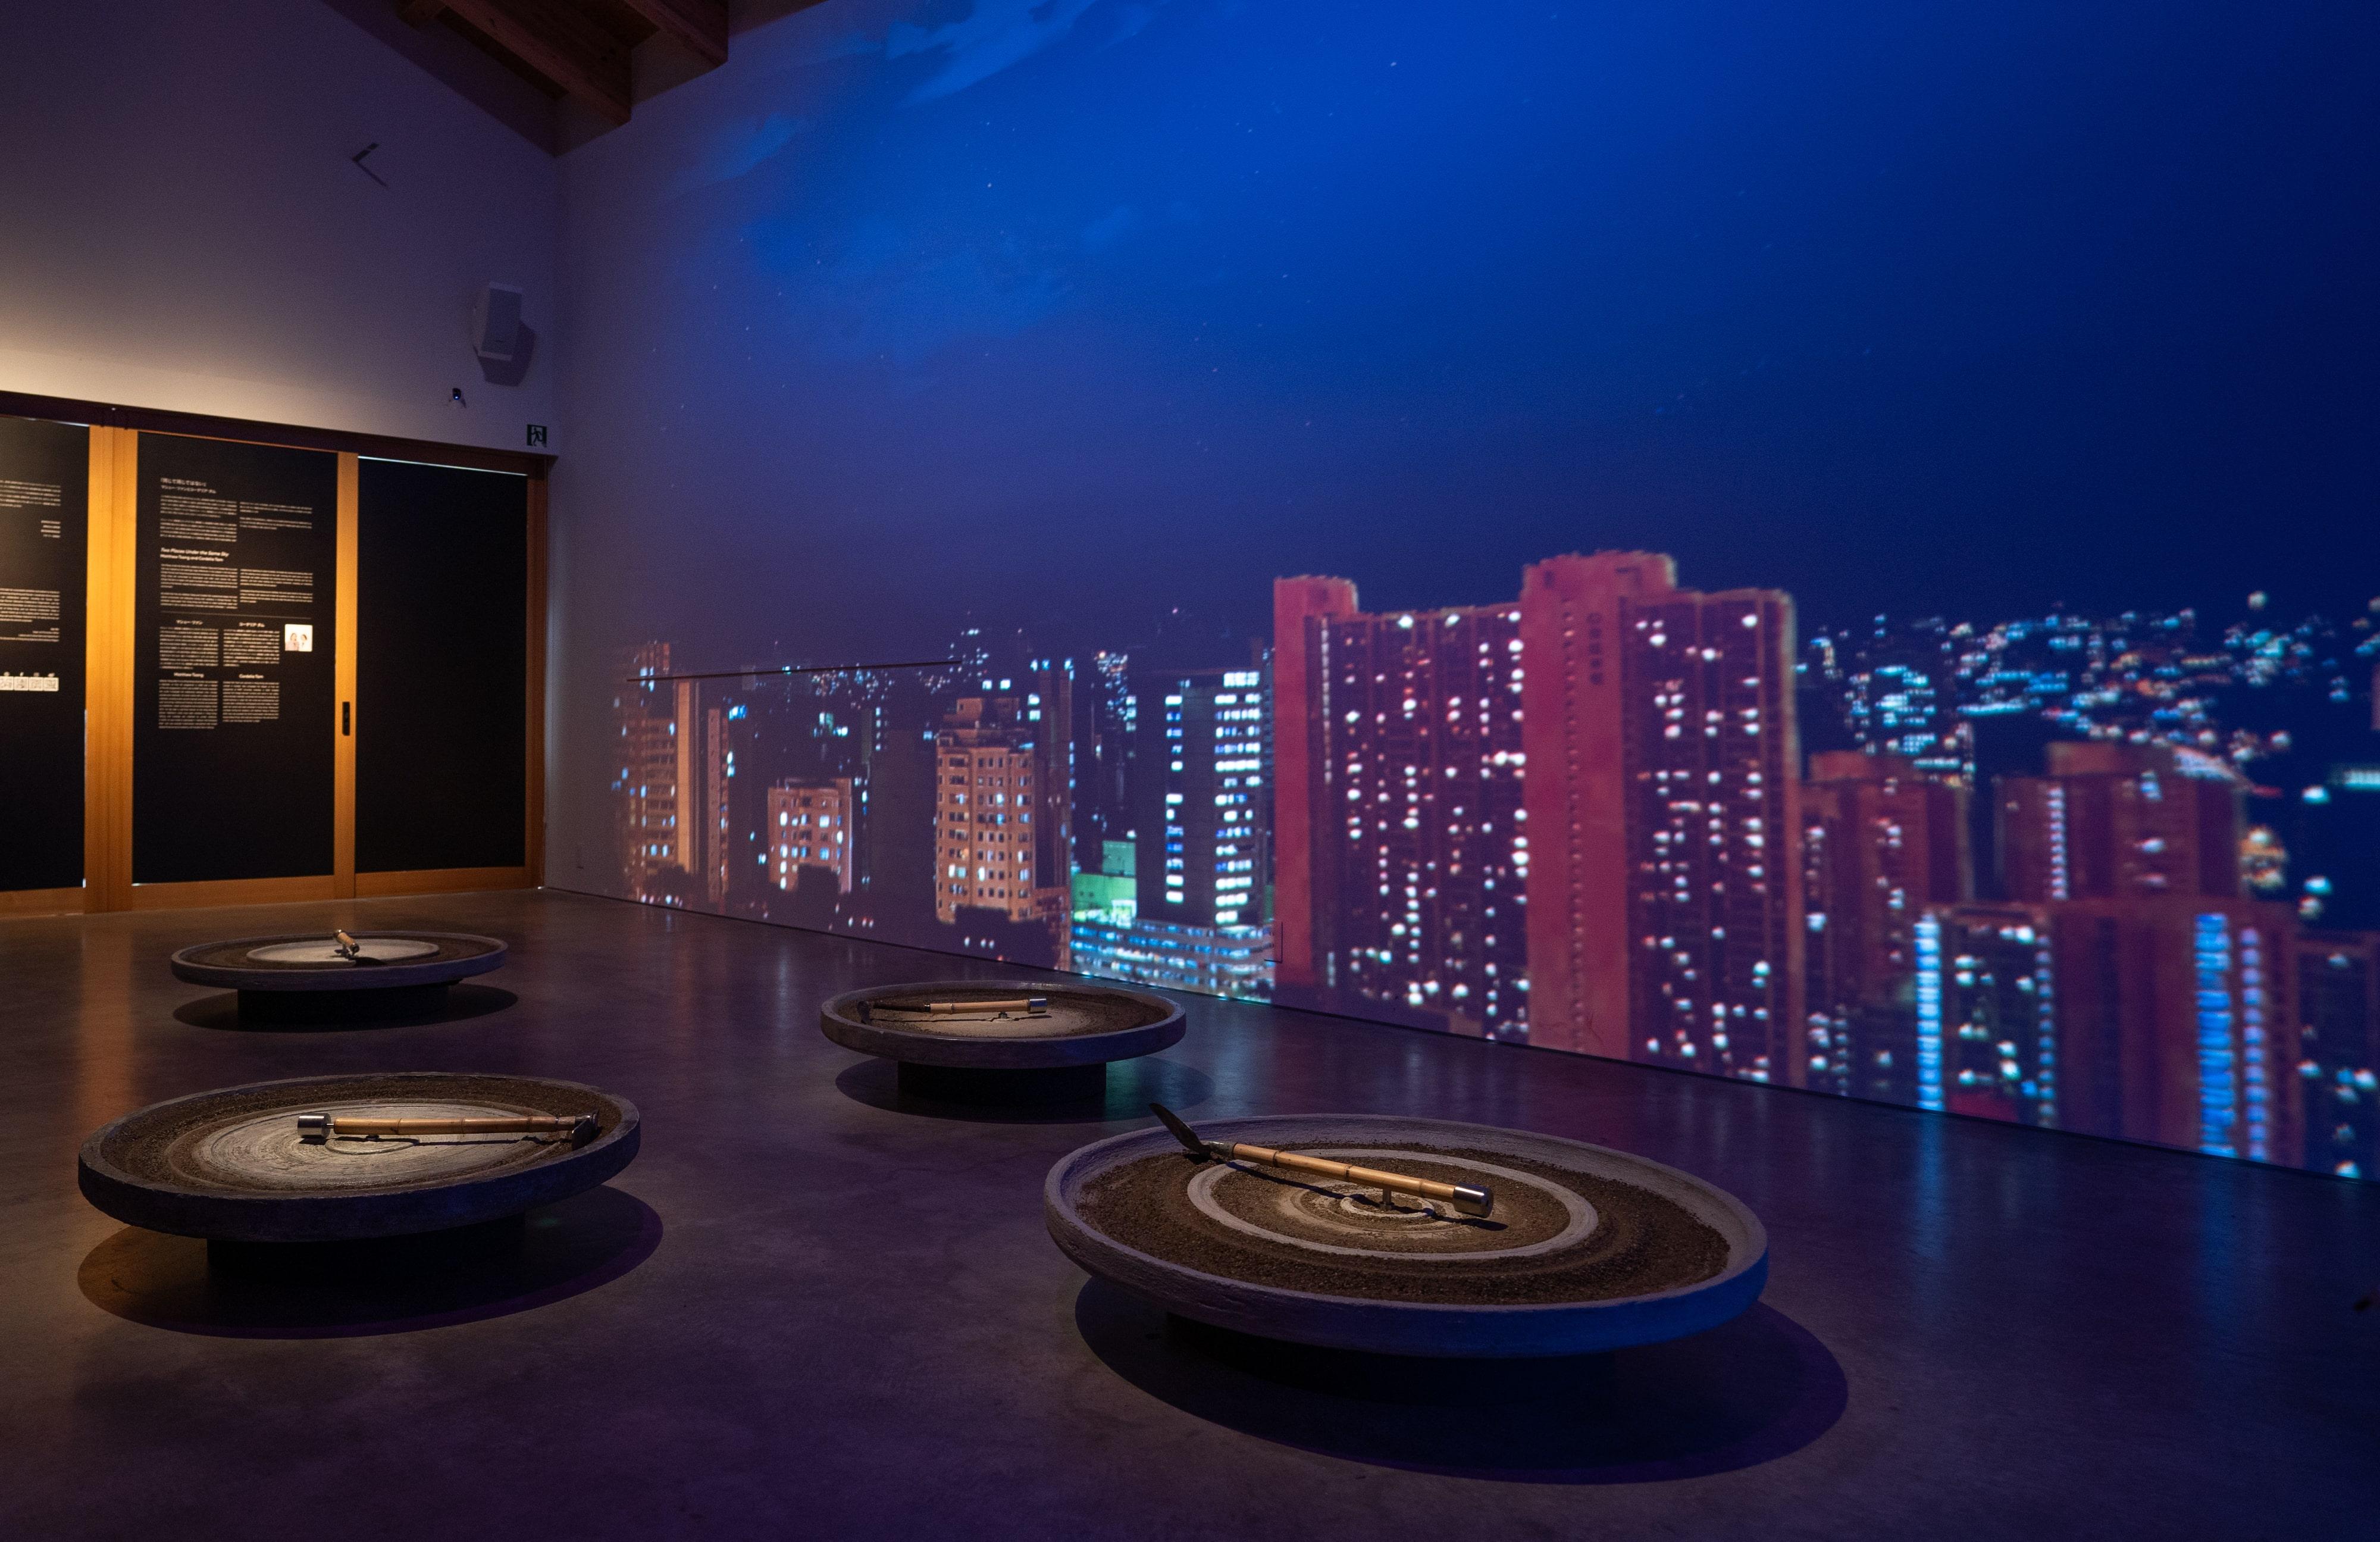 由香港藝術家曾敏富及譚若蘭創作的藝術裝置作品。作品利用了投影和燈光效果在牆壁上打造動態天空景象，反映着城市生活的快速步伐。